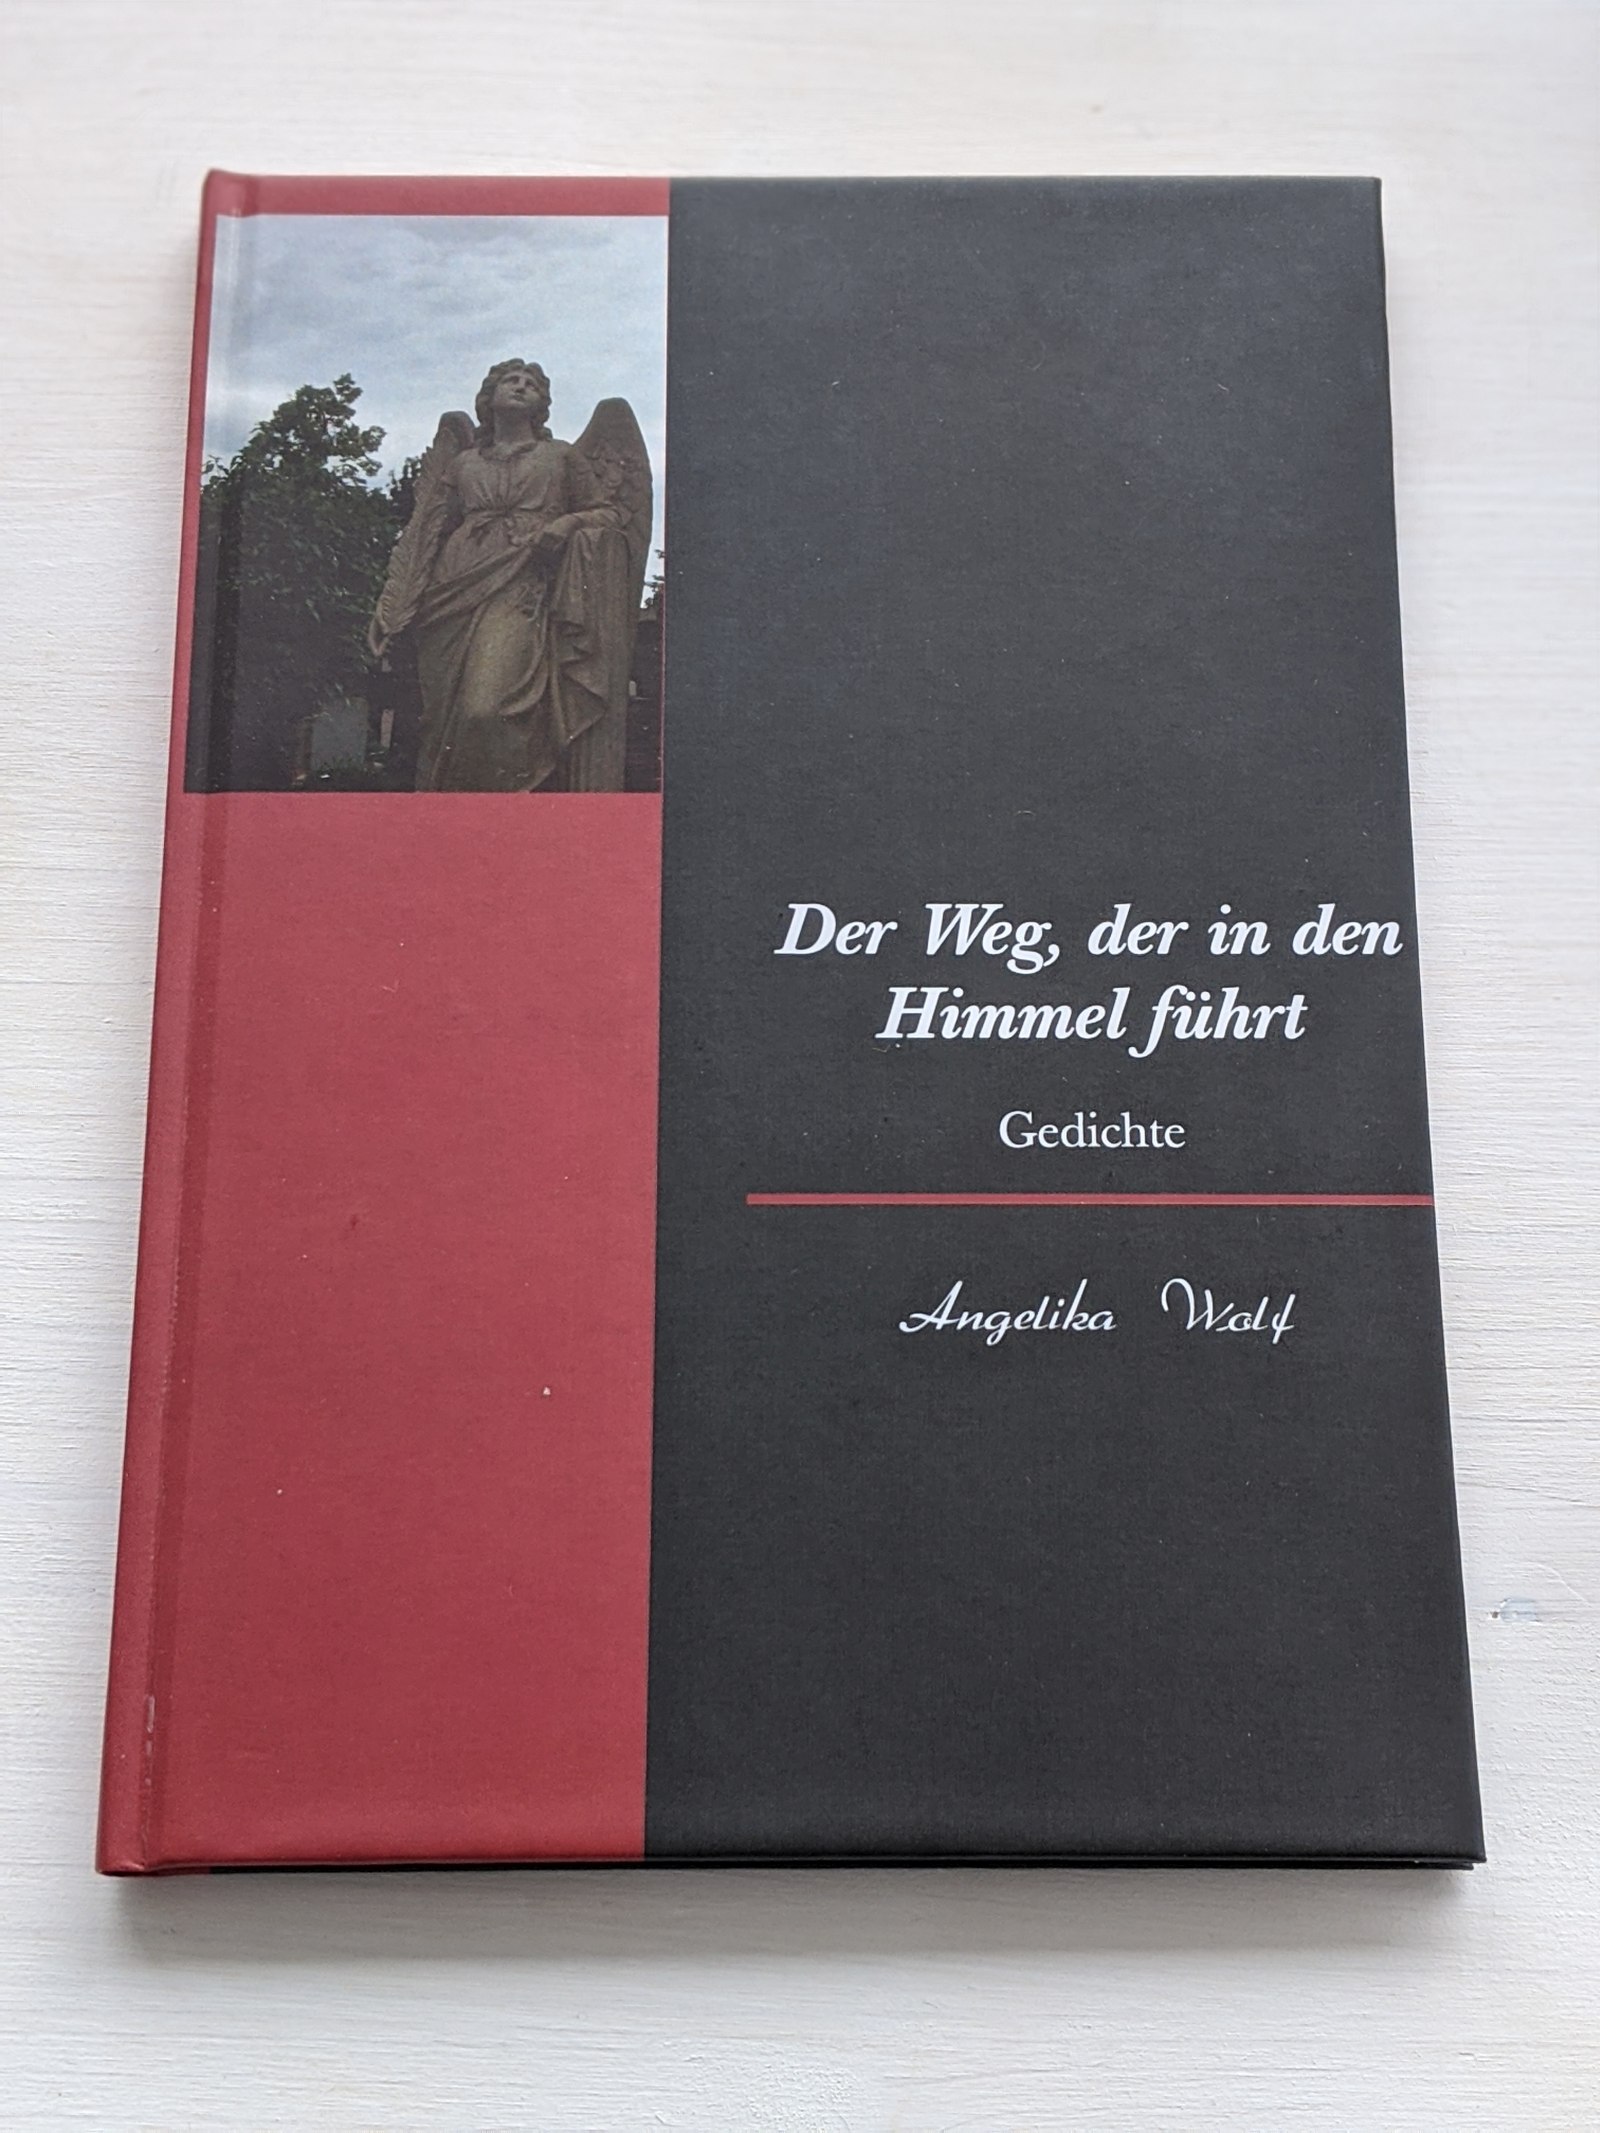 Der Weg, der in den Himmel führt - Wolf, Angelika (Herausgeber)